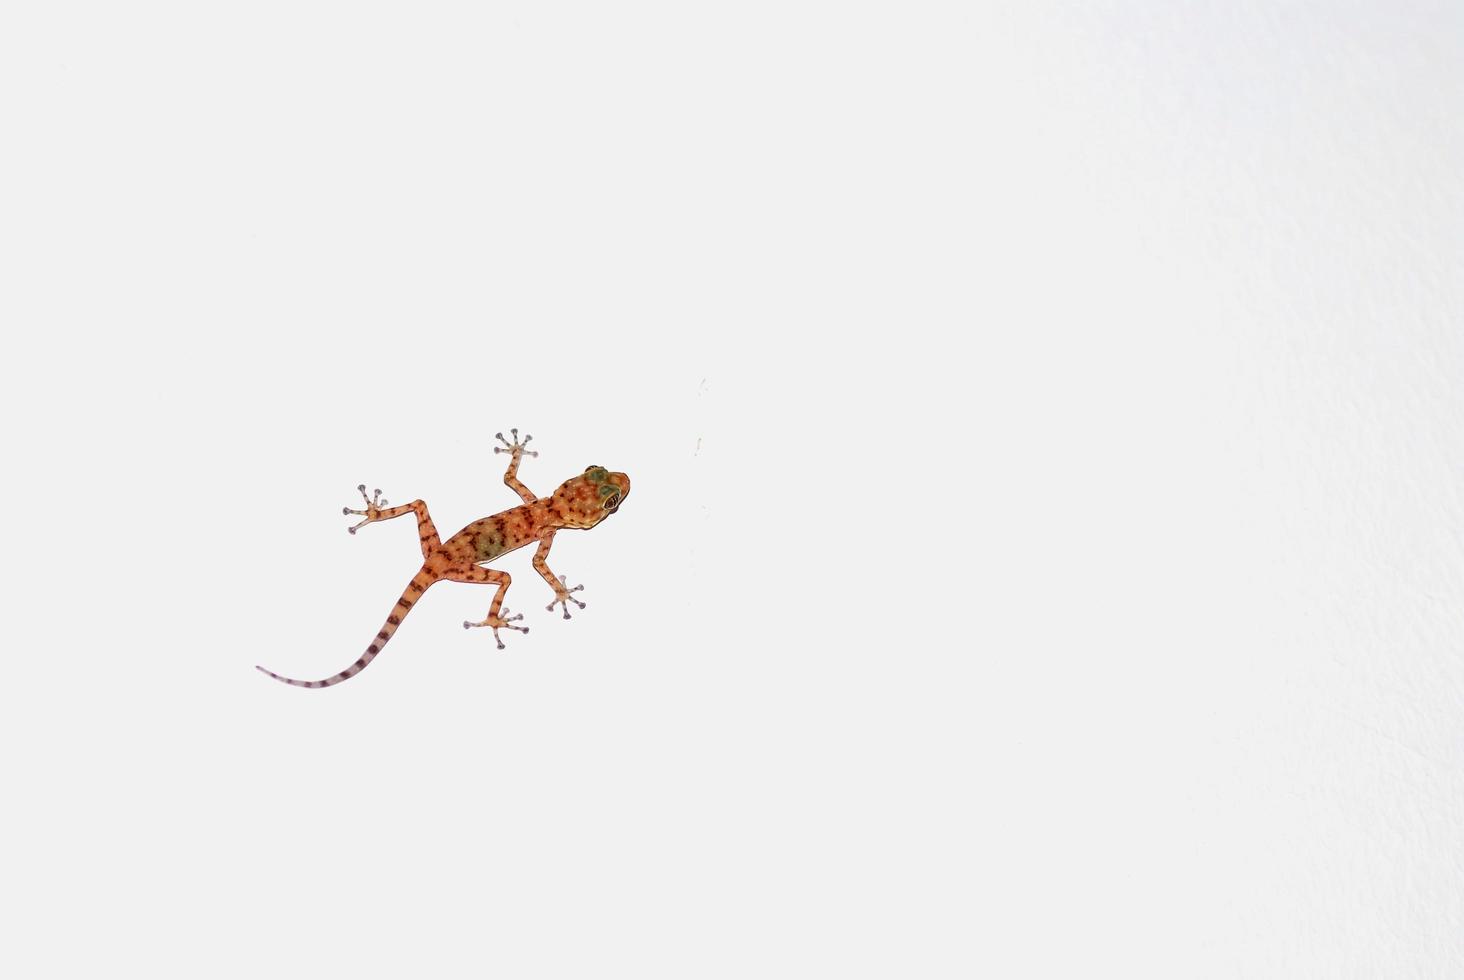 gecko grimpe sur un mur blanc dans le voyage photo